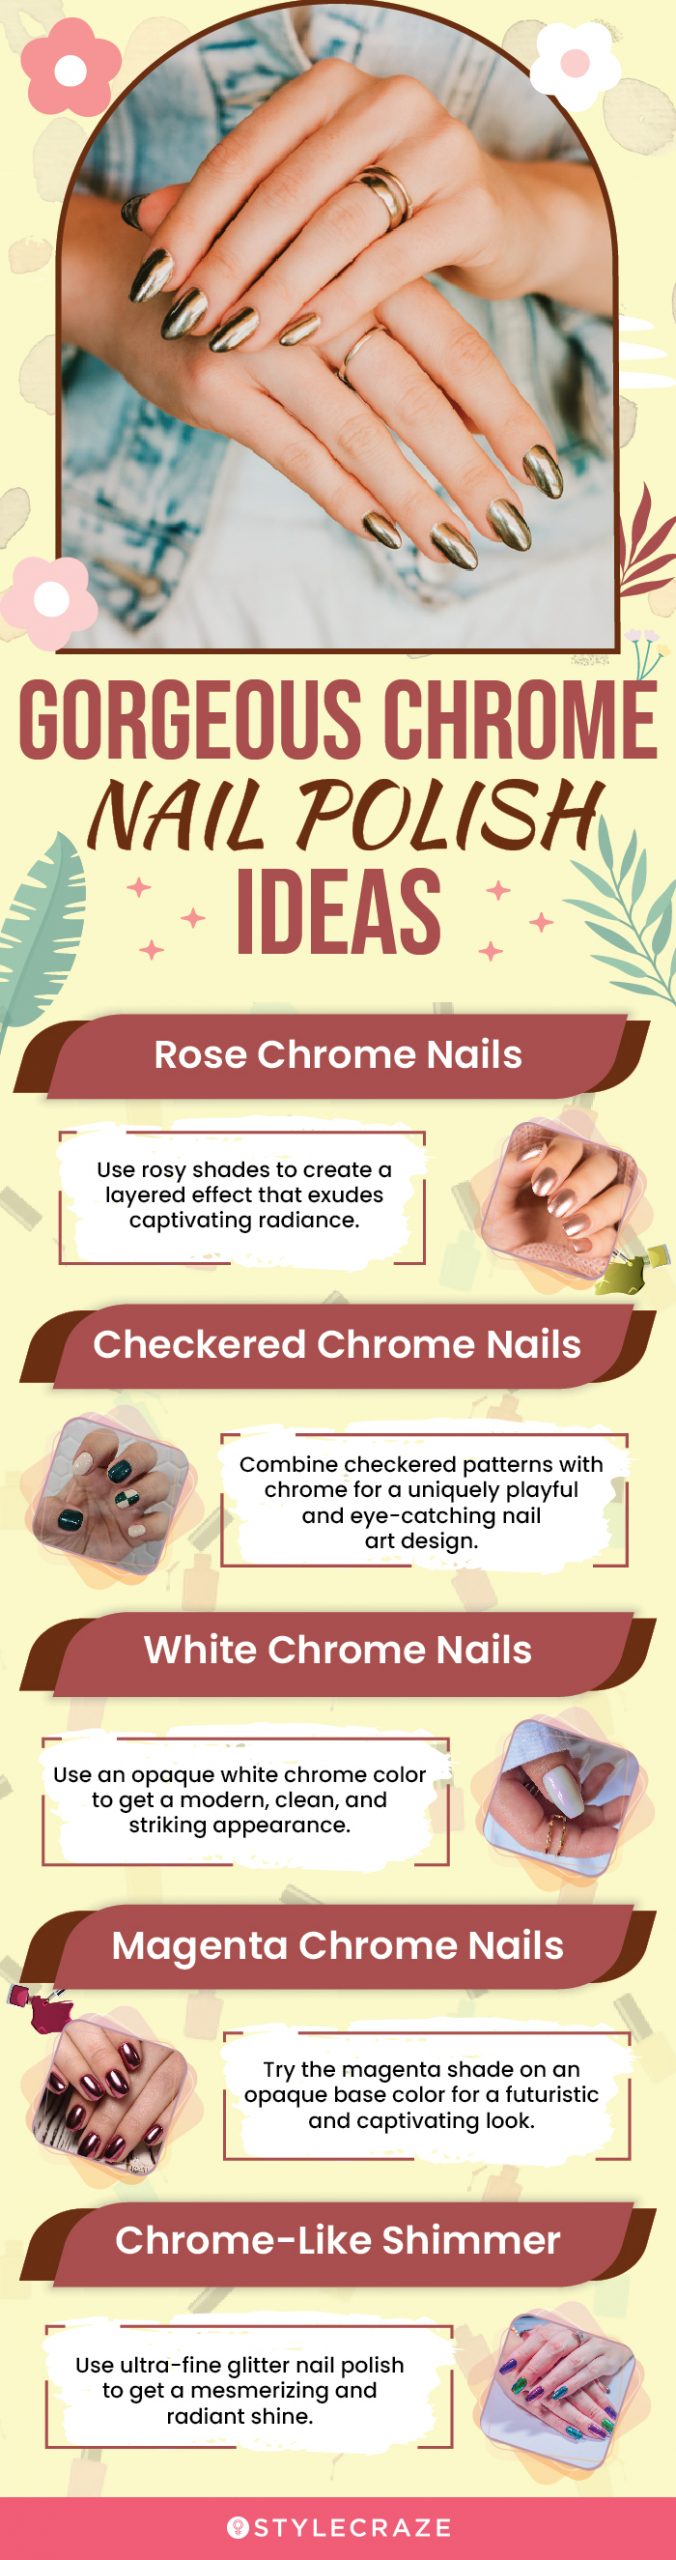 Gorgeous Chrome Nail Polish Ideas (infographic)